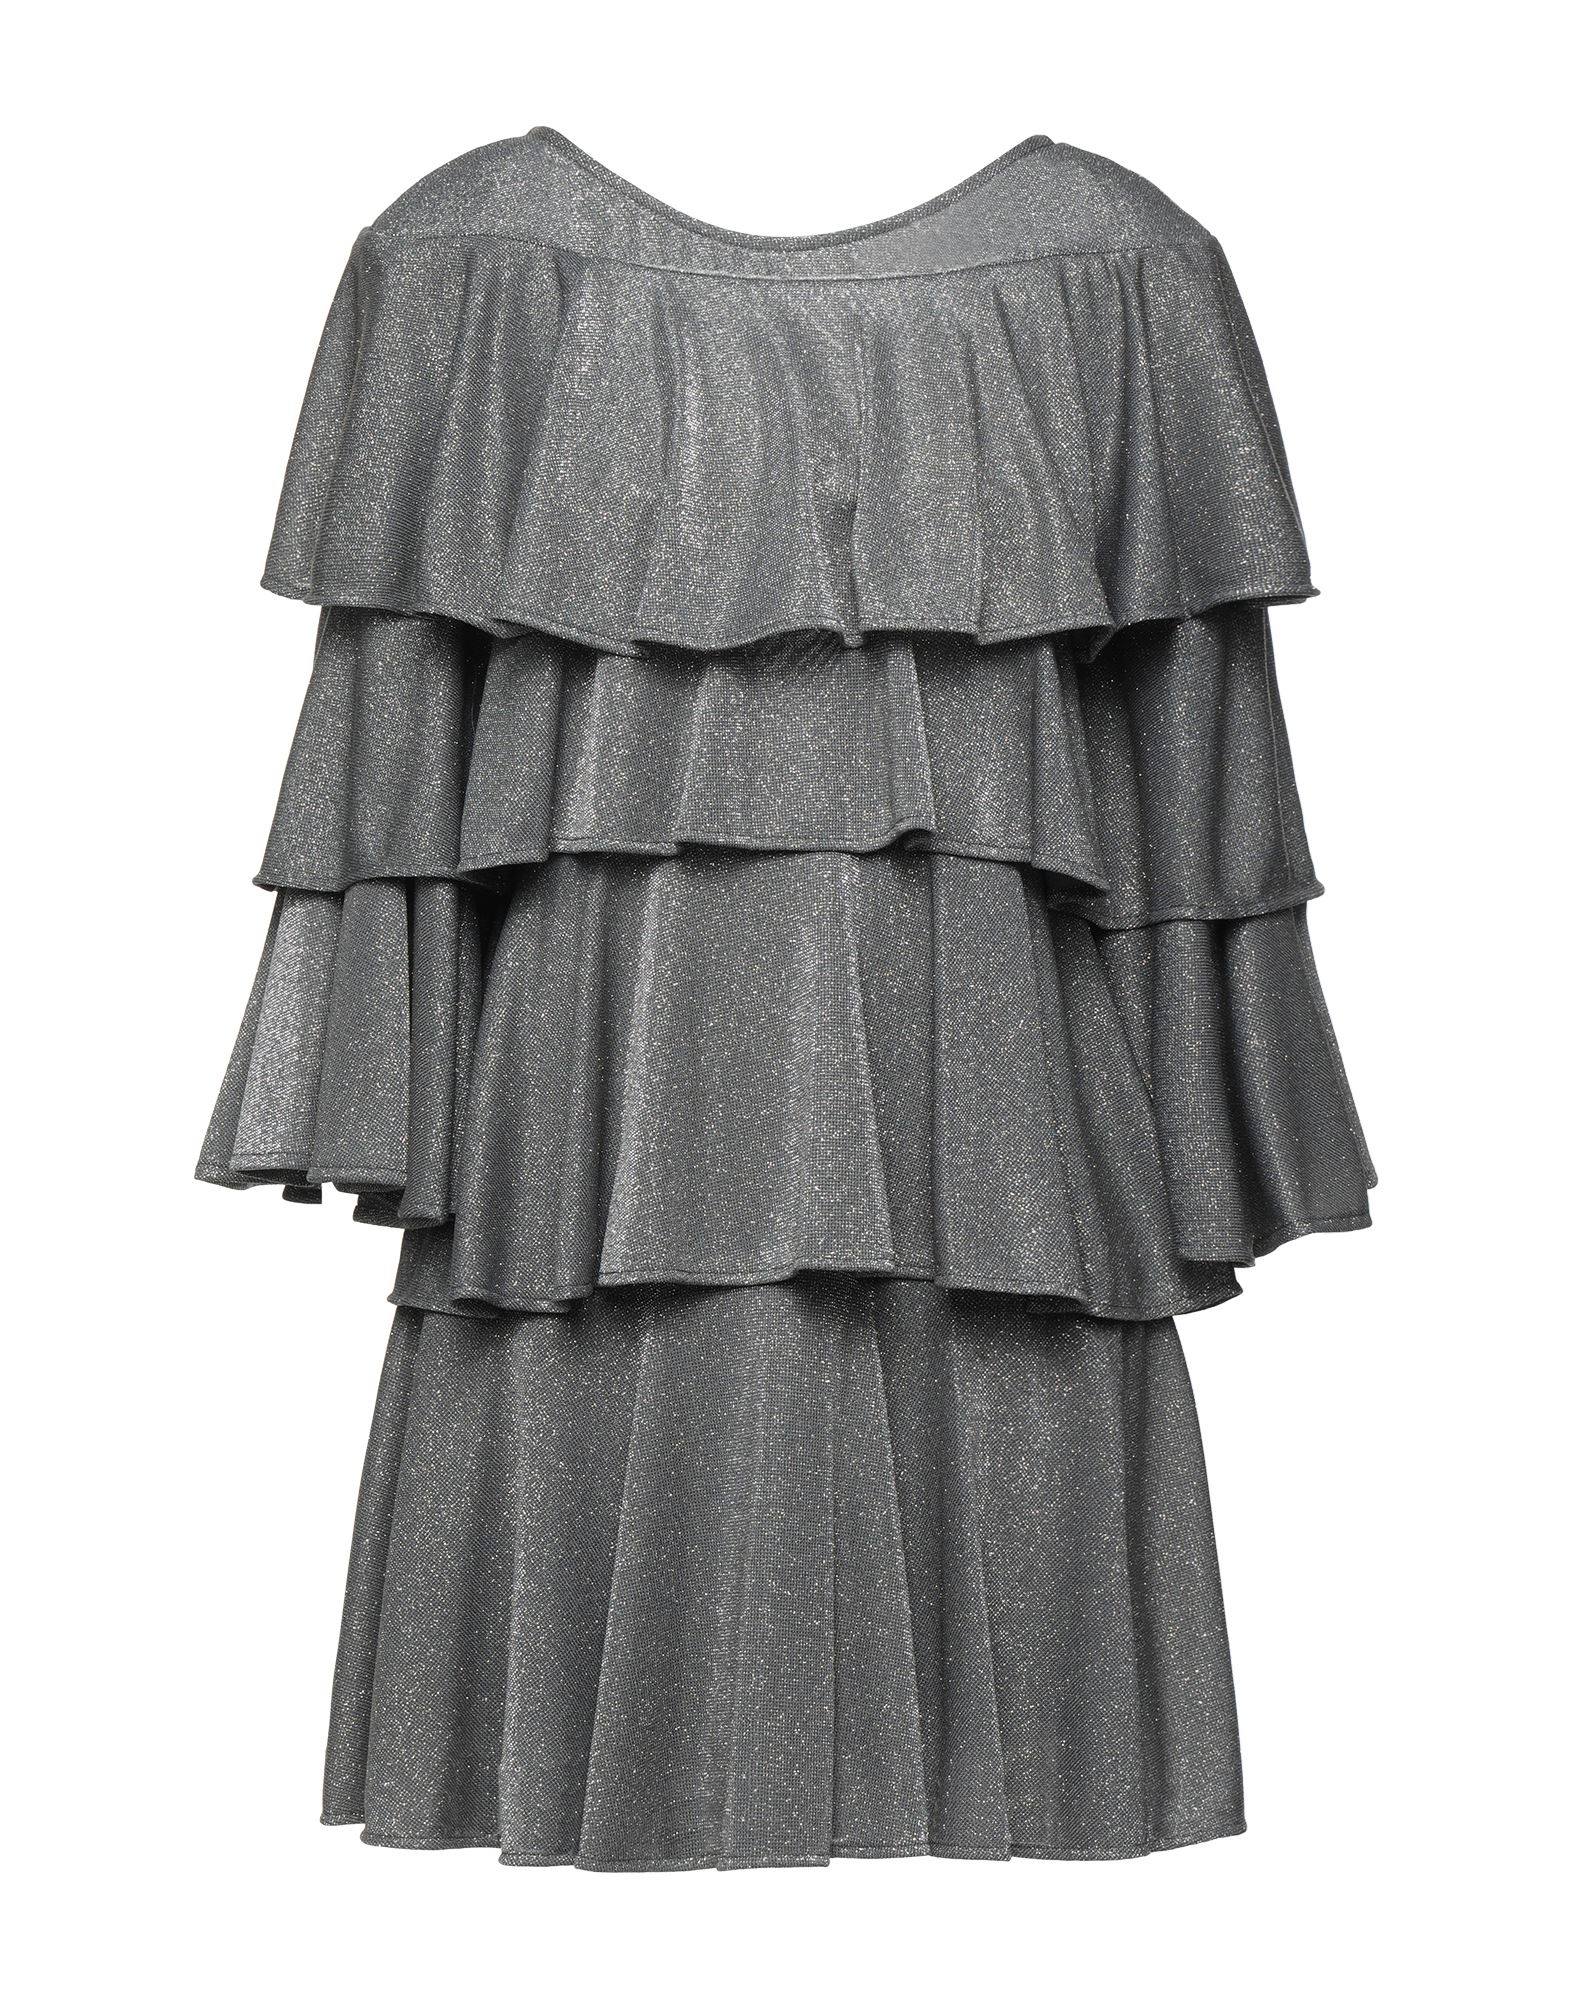 Gaelle Paris Short Dresses In Grey